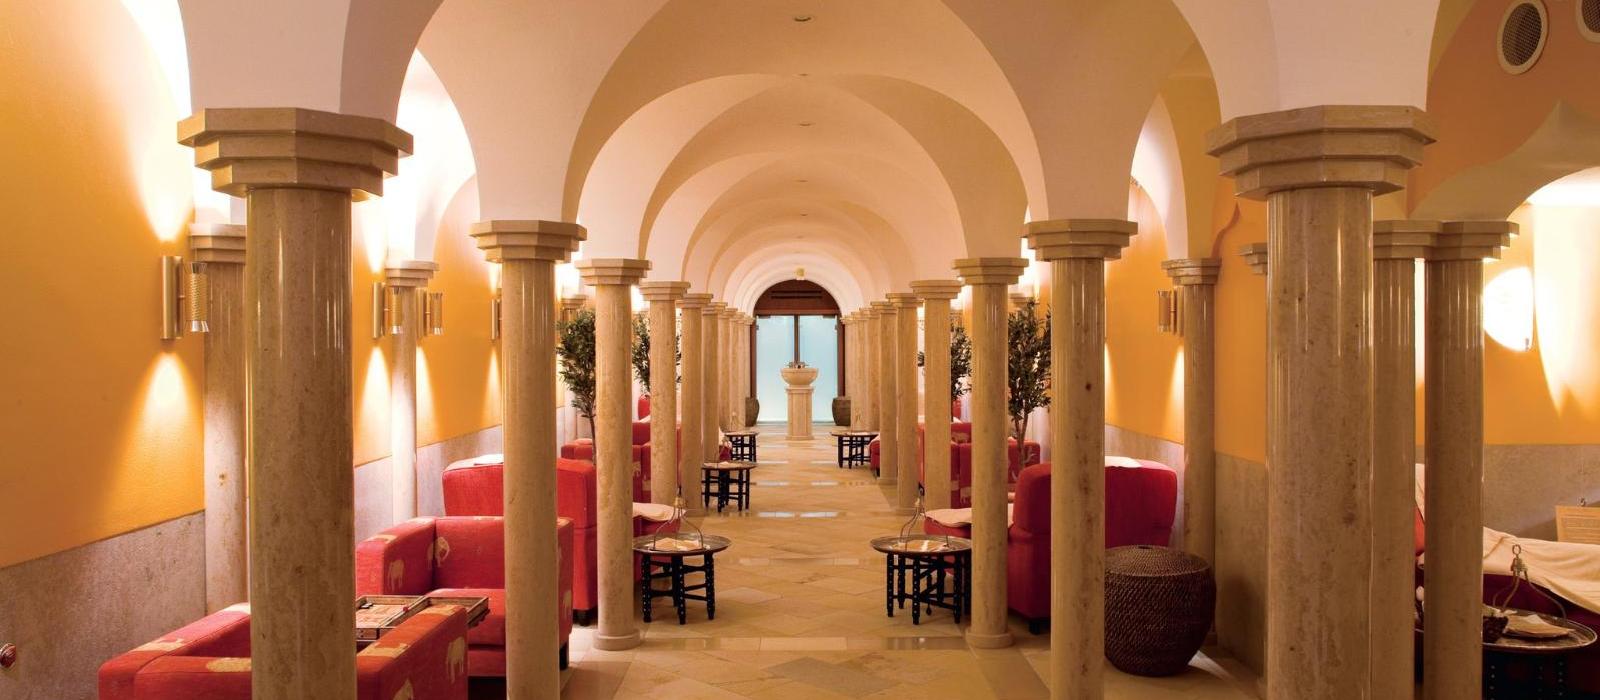 埃尔盟奢华水疗艺术宫殿酒店(Schloss Elmau Luxury Spa Retreat & Cultural Hideaway) 图片  www.lhw.cn